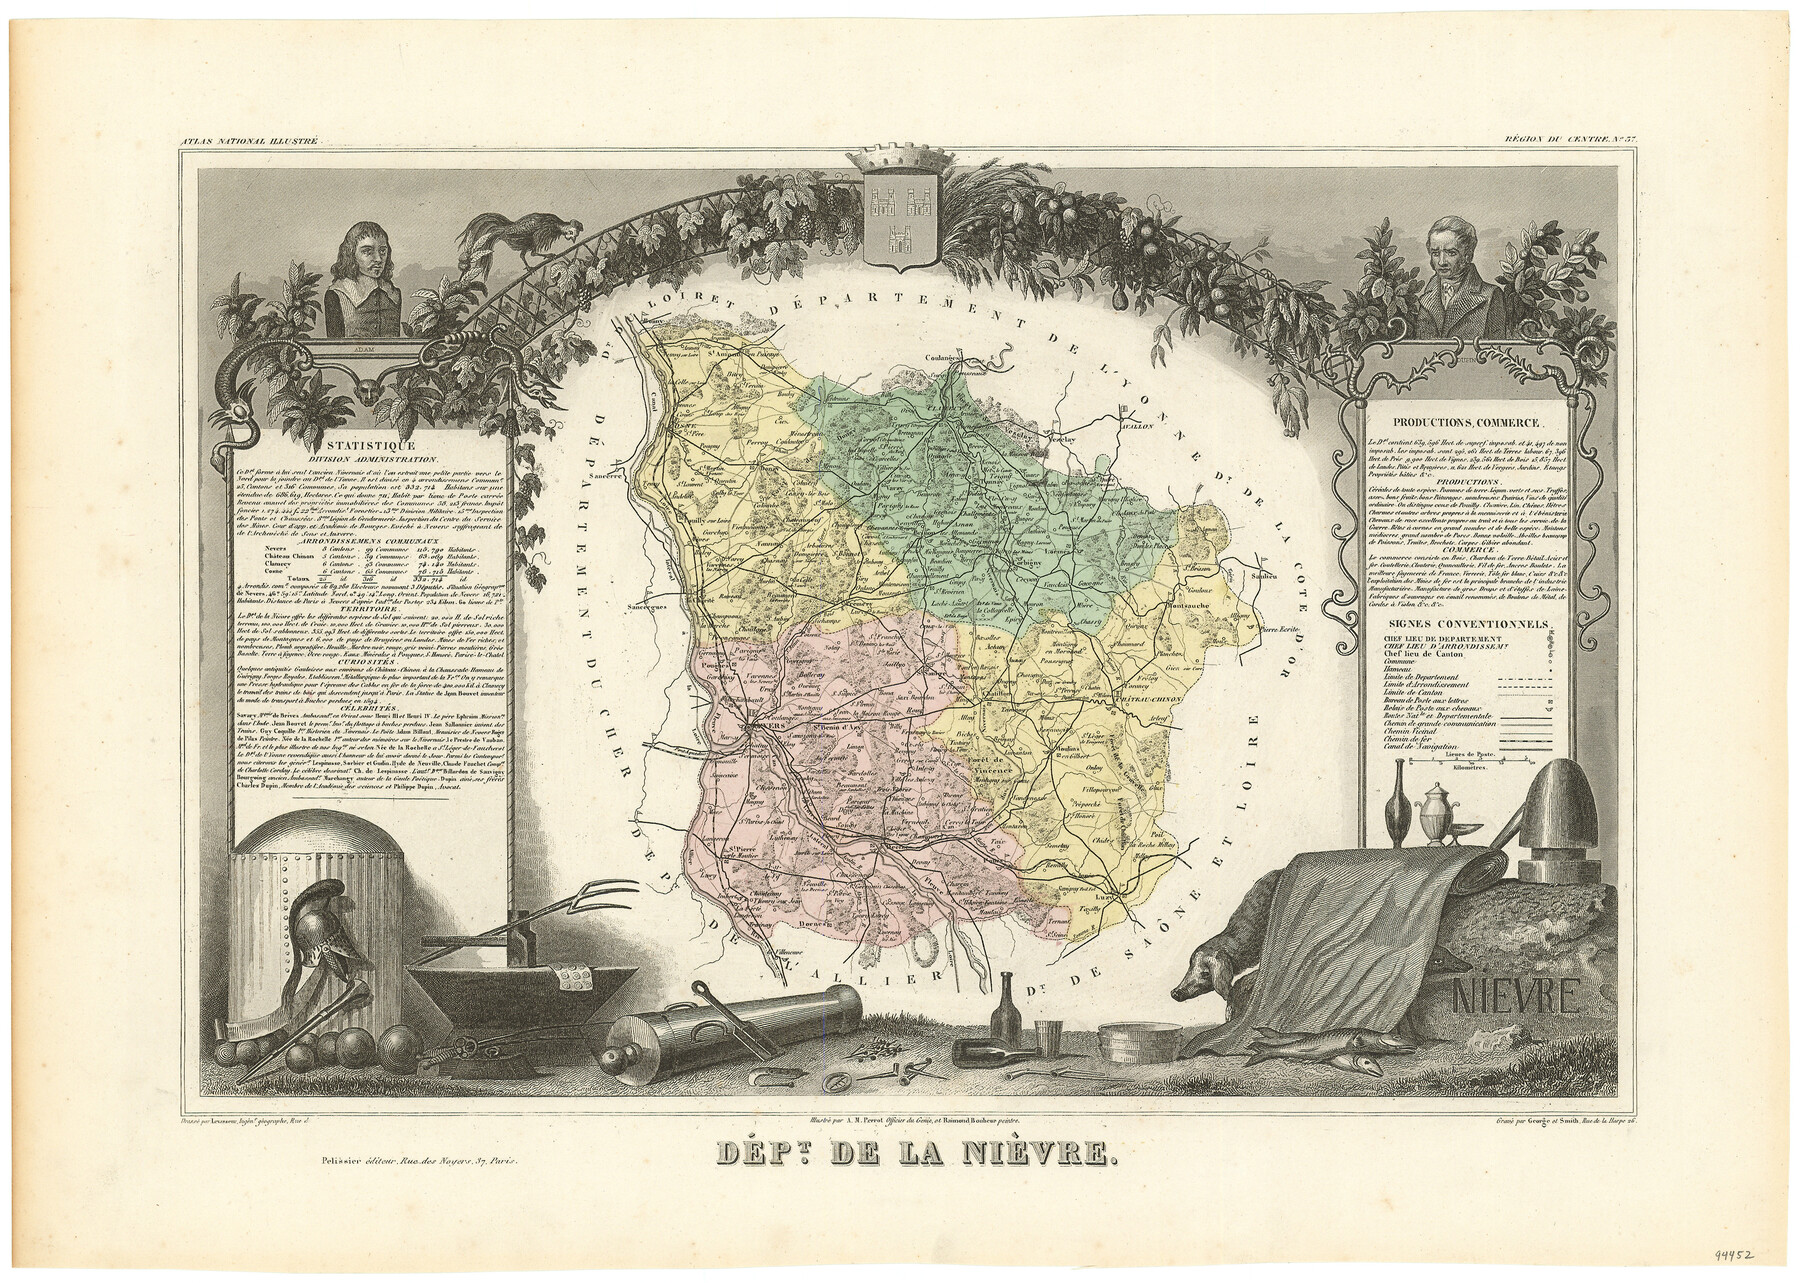 94452, Dépt. de la Nièvre, General Map Collection